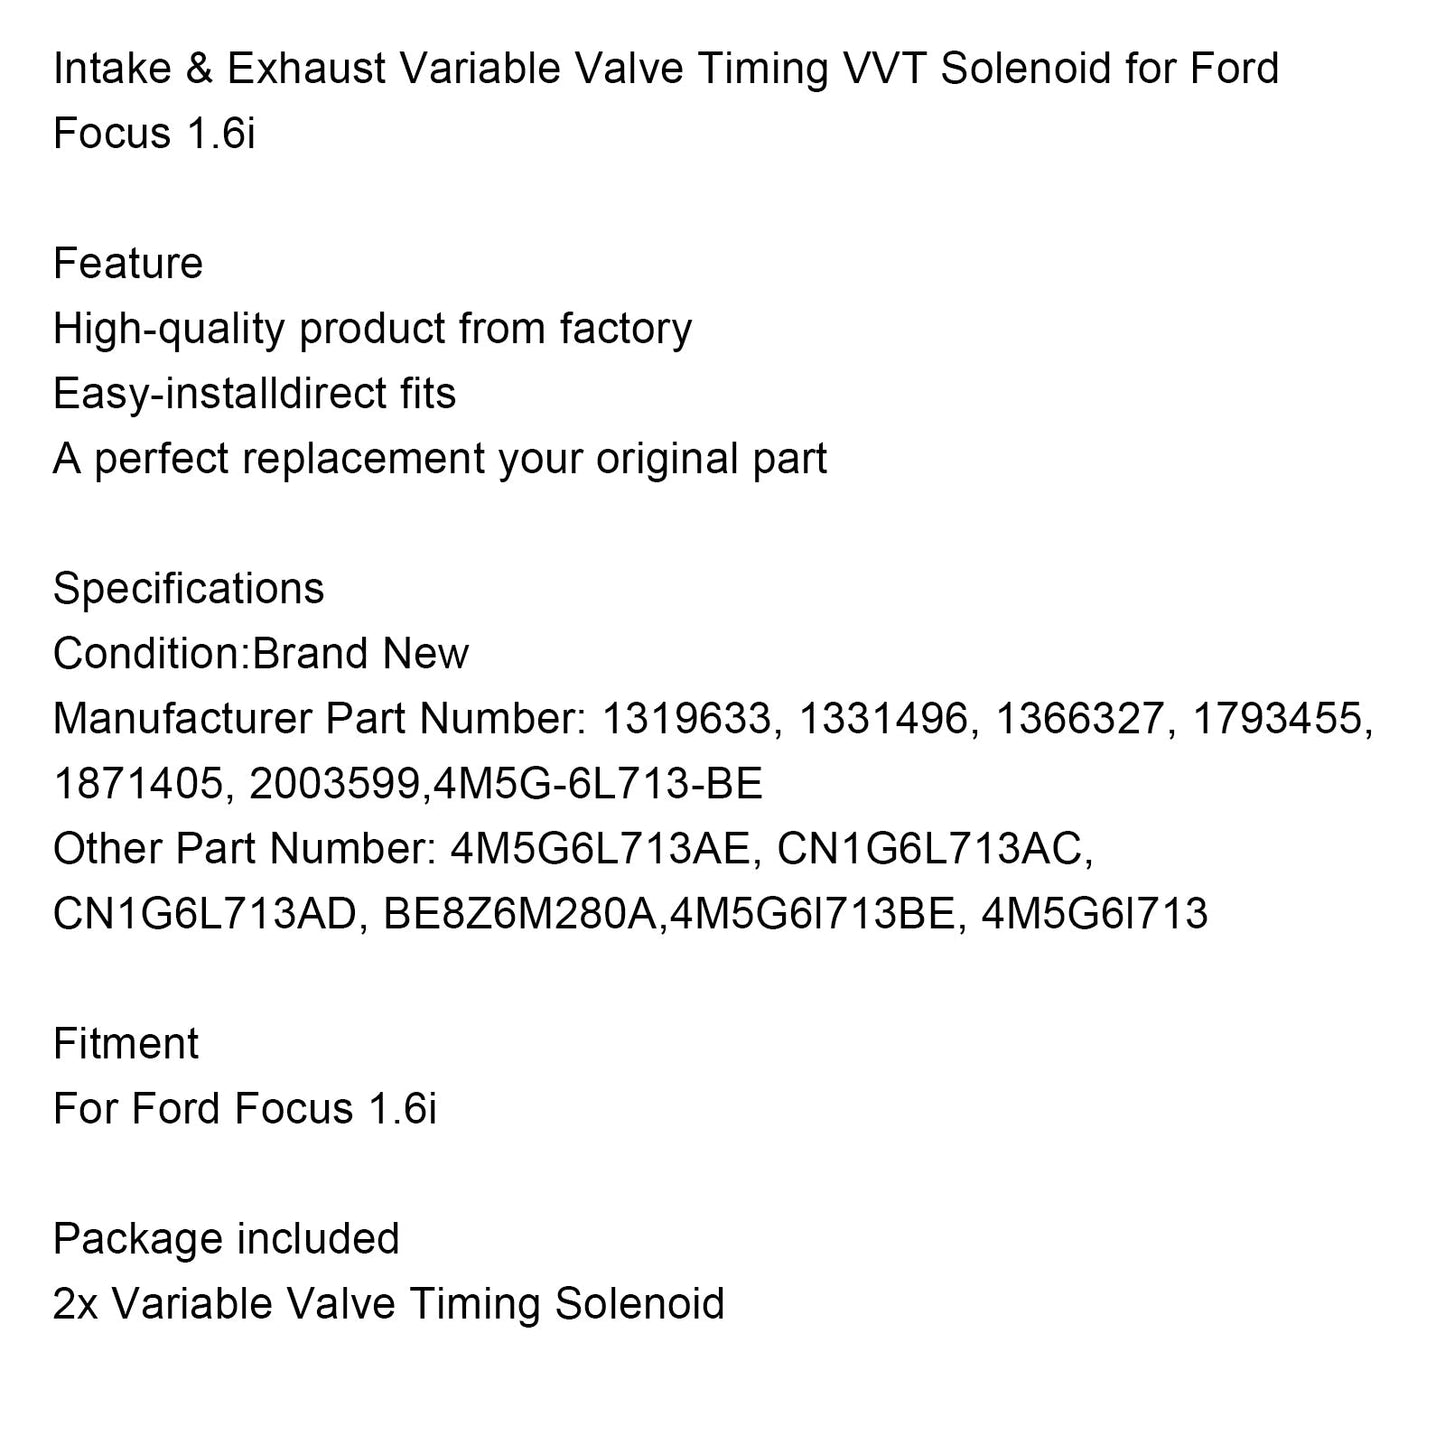 Ford Focus 1.6i Einlass- und Auslass-VVT-Magnetventil mit variabler Ventilsteuerung